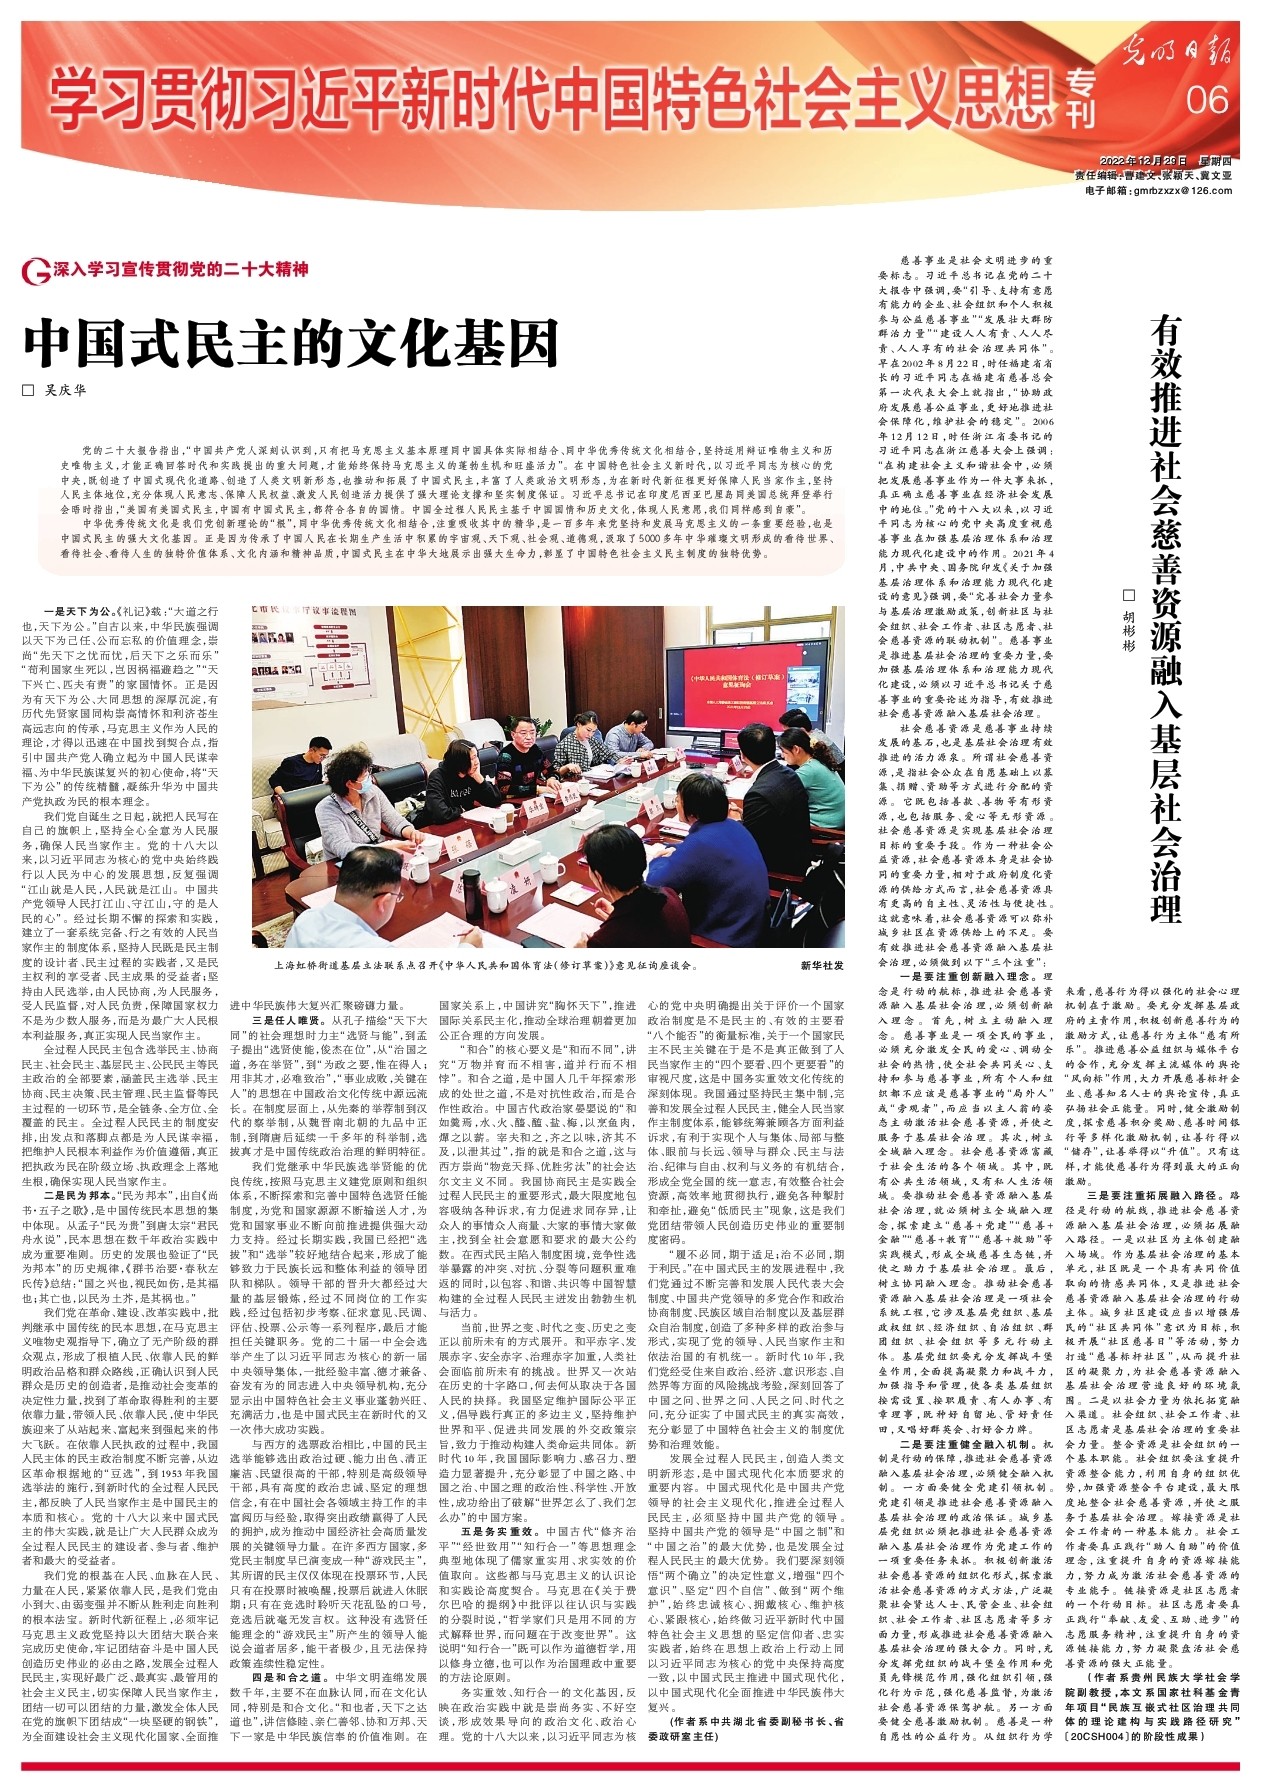 中国式民主的文化基因-光明日报-光明网